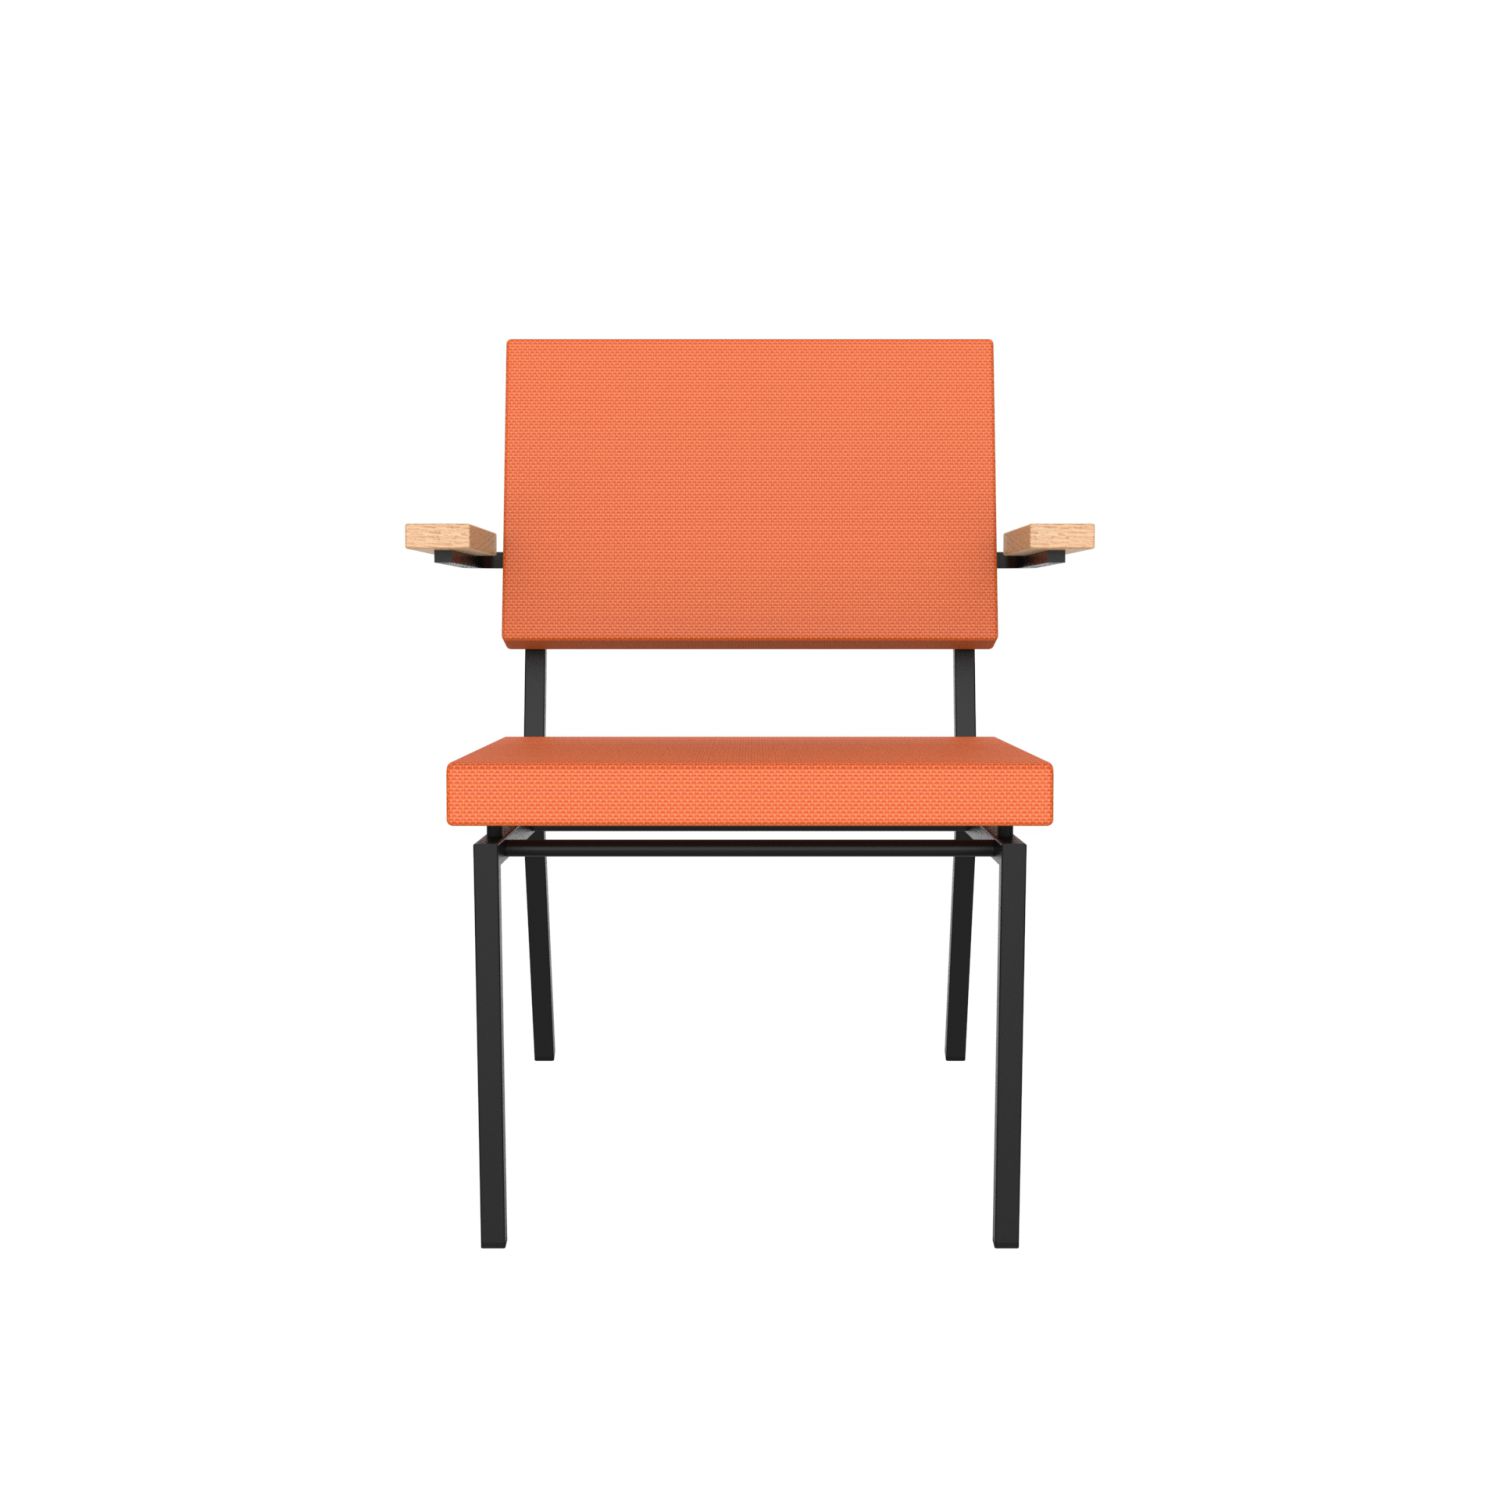 lensvelt gerrit veenendaal low chair with armrests burn orange 102 price level 1 black frame ral9005 hard leg ends